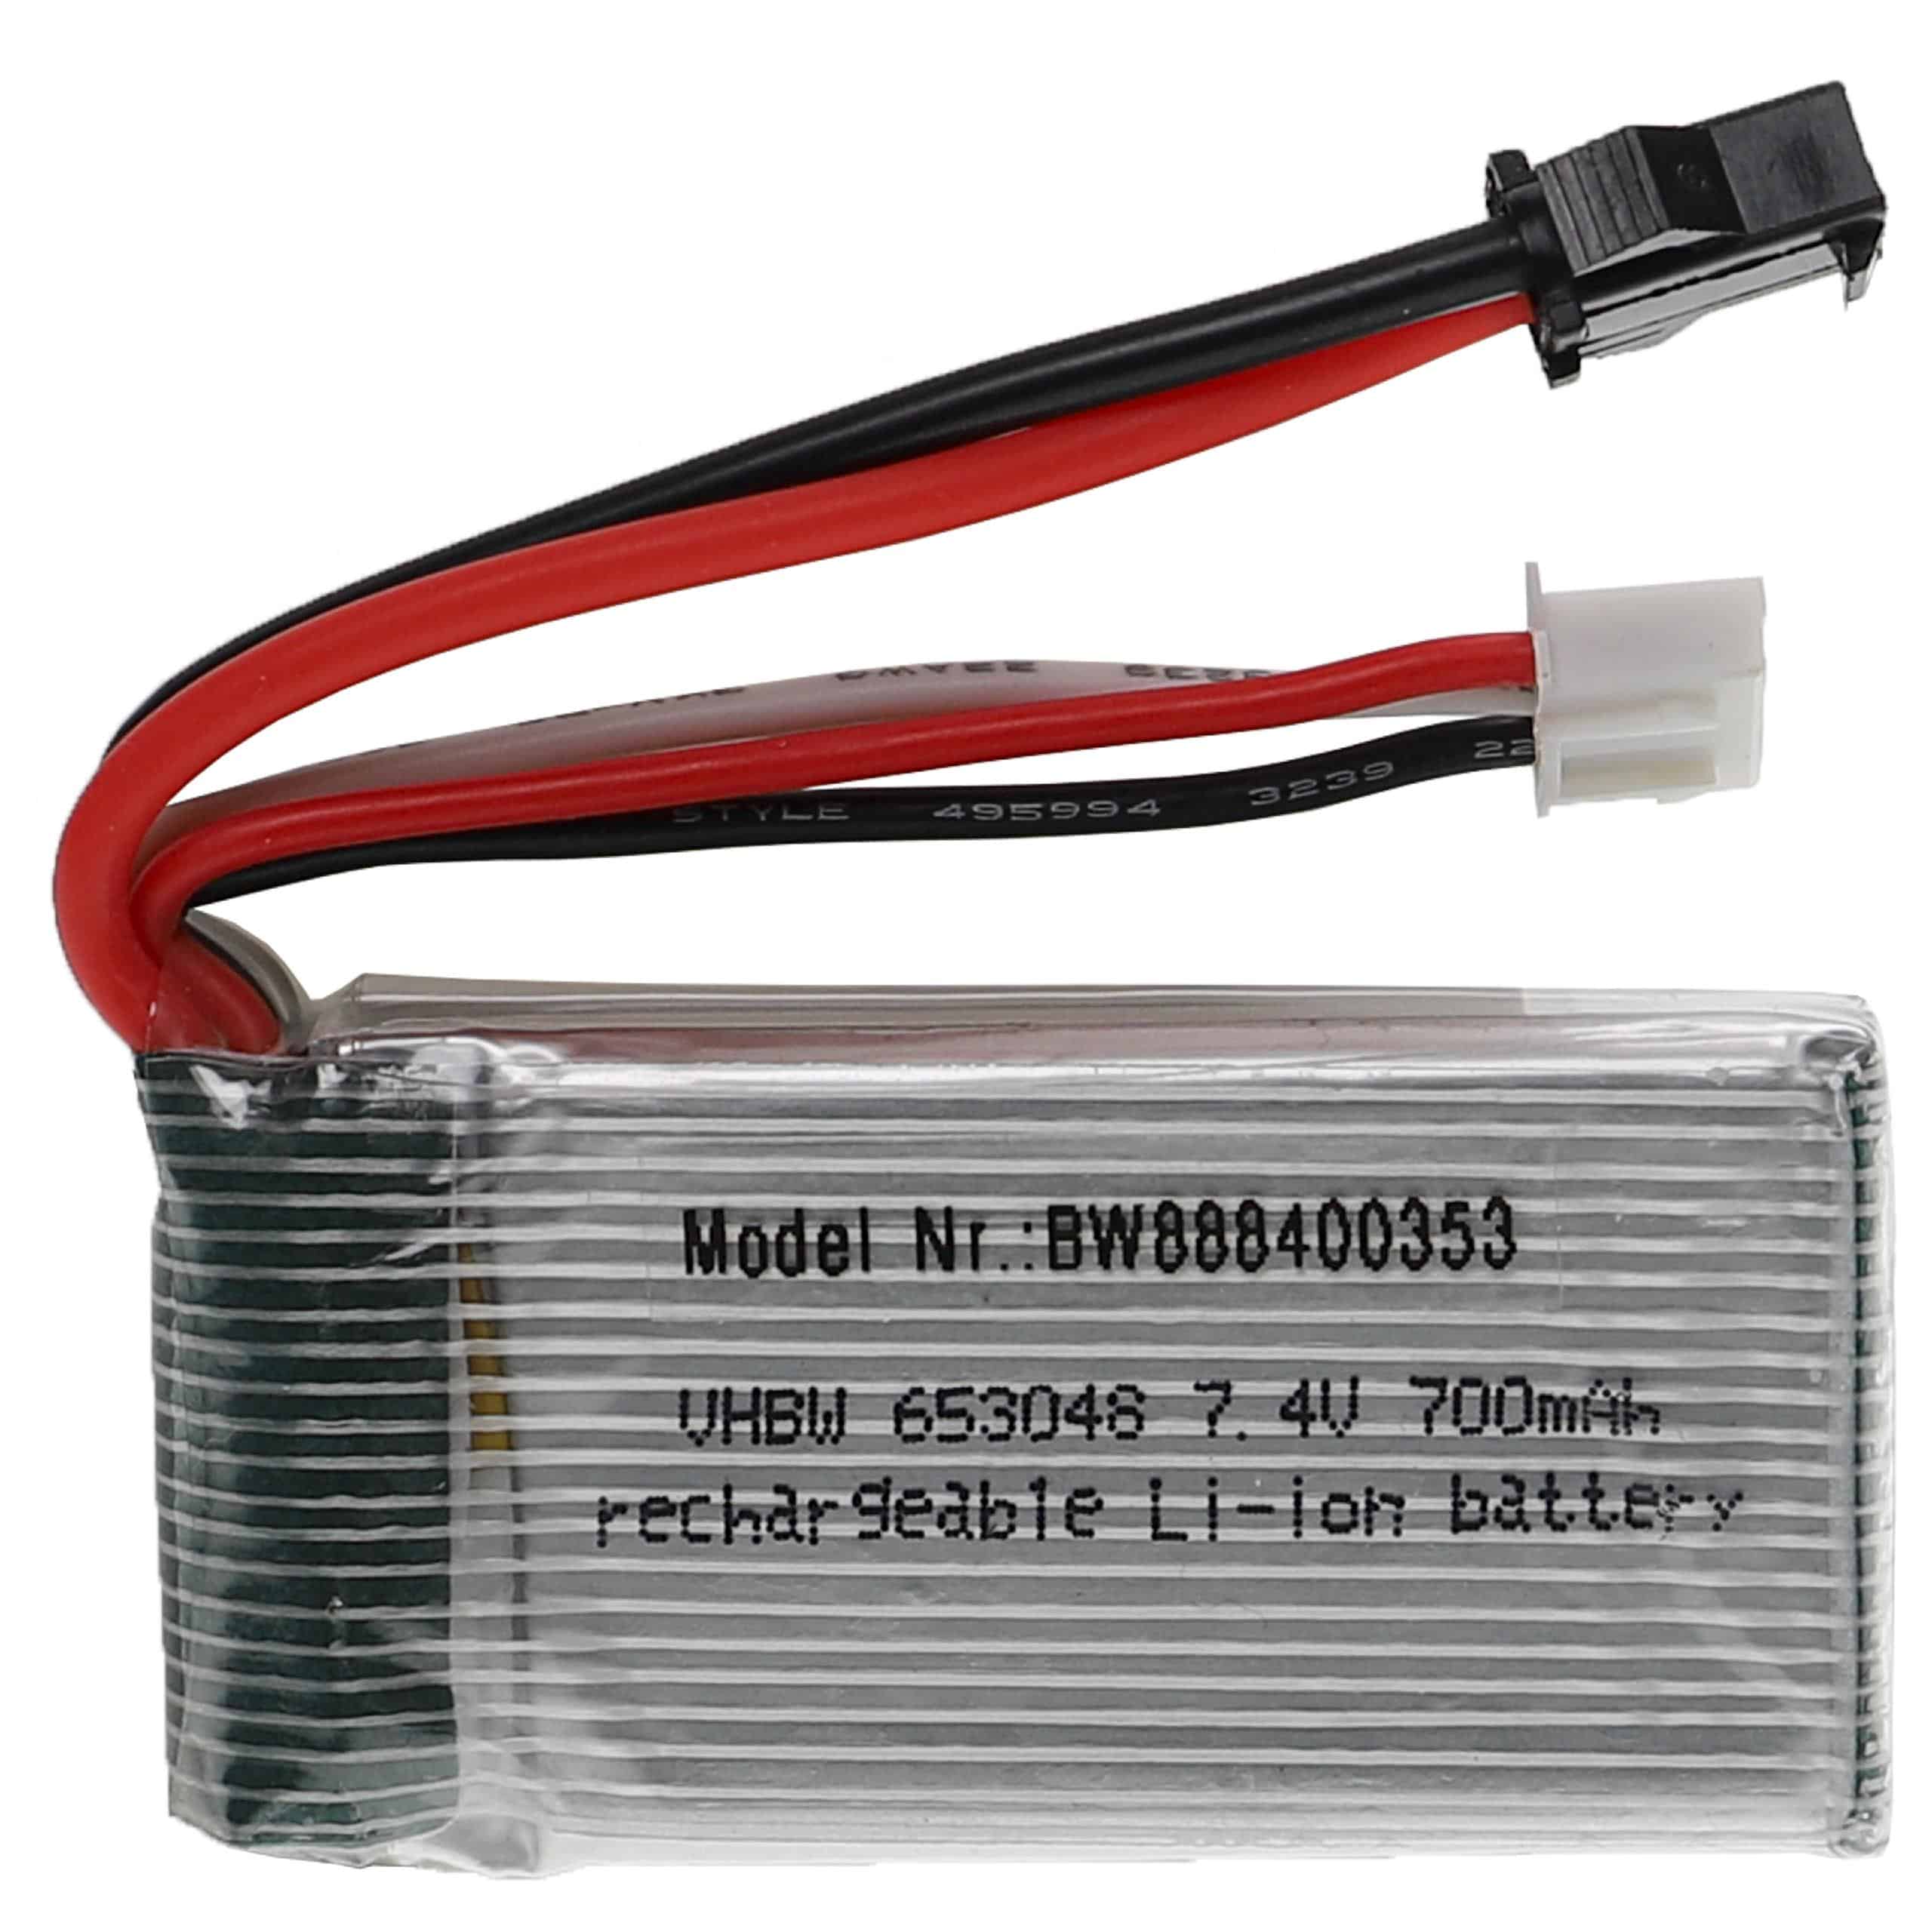 Batterie pour modèle radio-télécommandé - 700mAh 7,4V Li-polymère, SM-2P